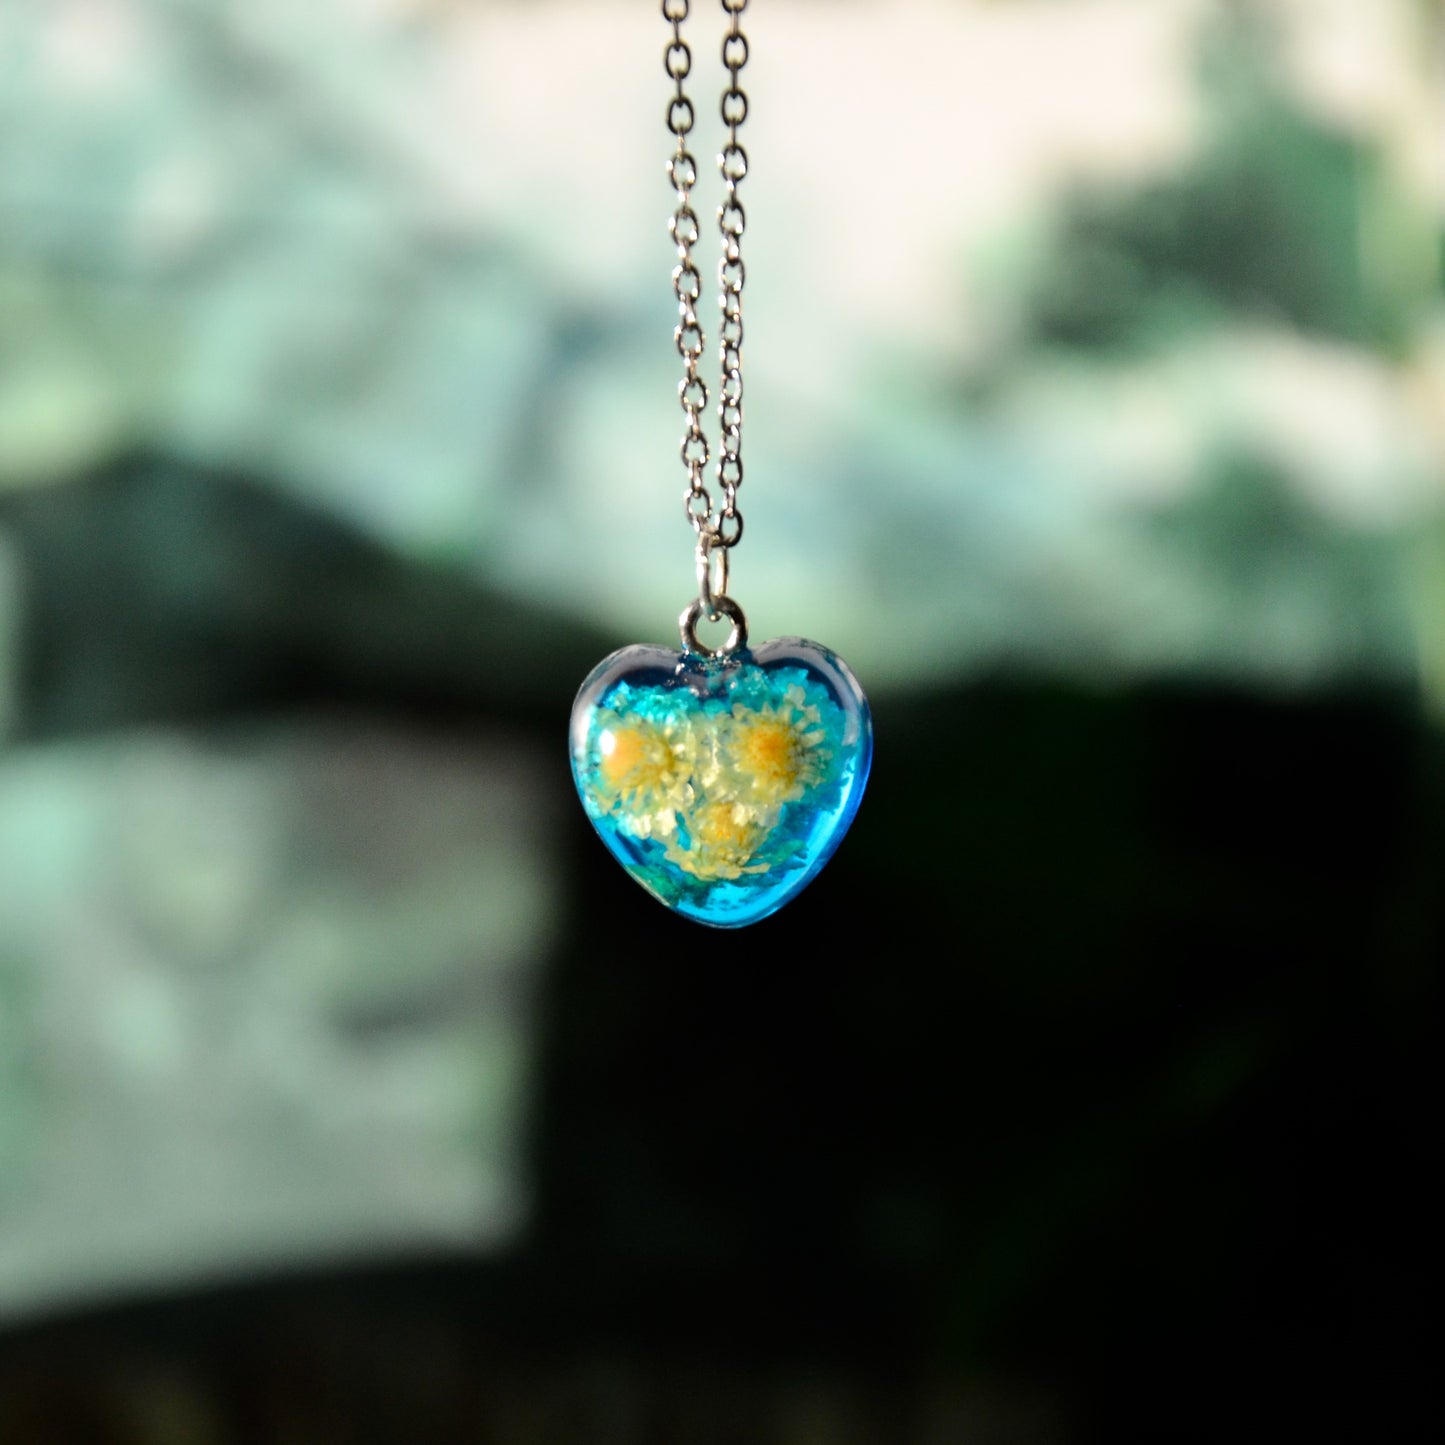 Naszyjnik małe serce z kocanką piaskową - kolor srebrny, błękitny